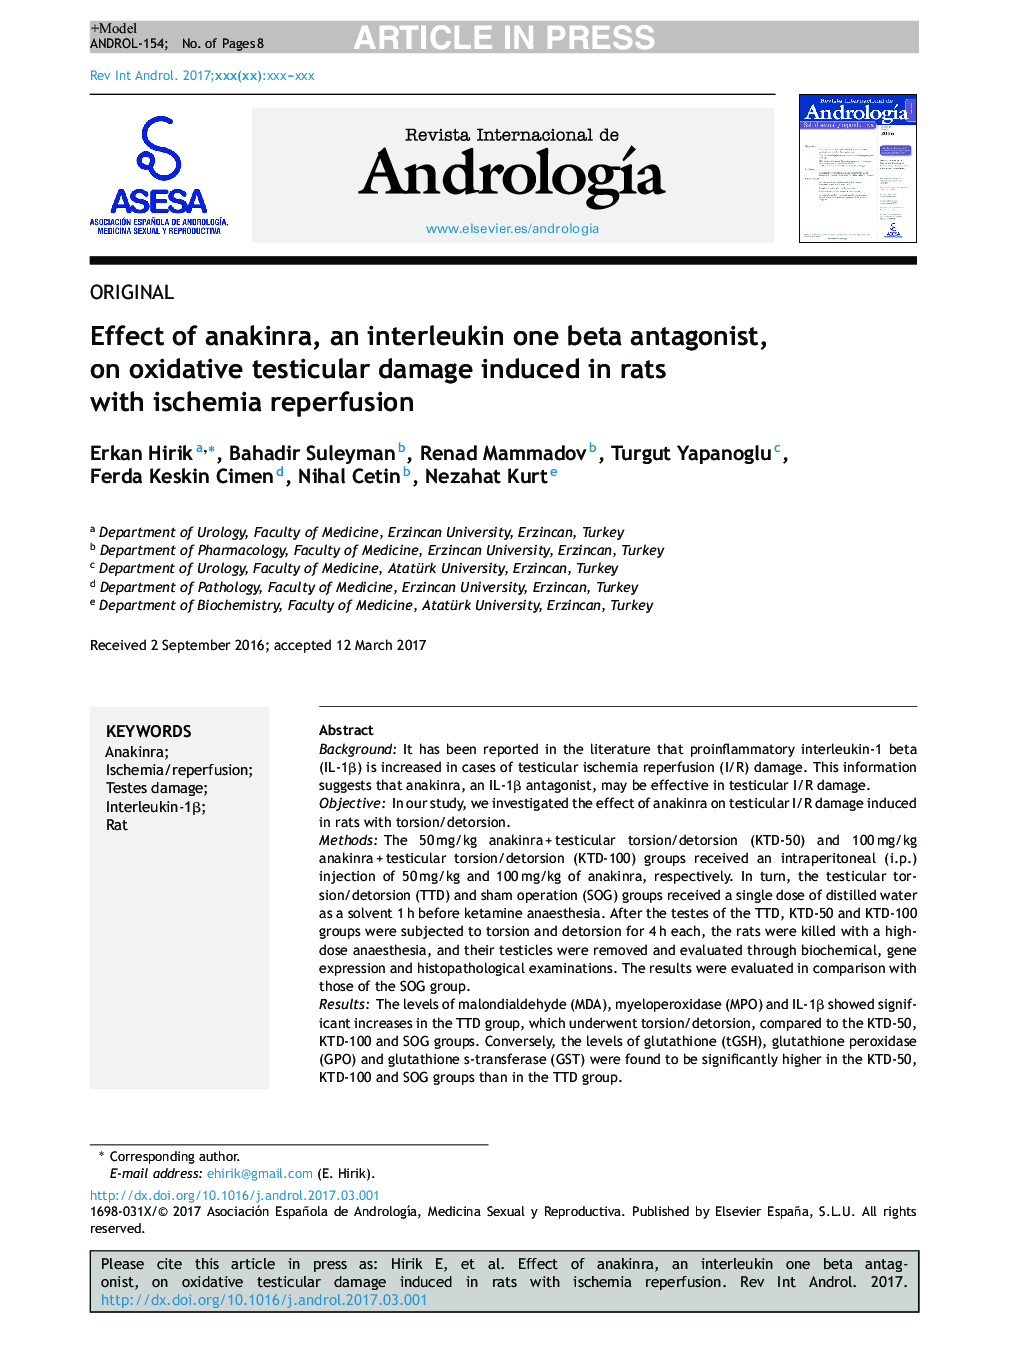 اثر آناکینرا، یک آنتاگونیست بتاتال اینترلوکین بتا بر آسیب ادرارآوری بیضه ناشی از موشهای صحرایی با ریفرژی ایسکمی 